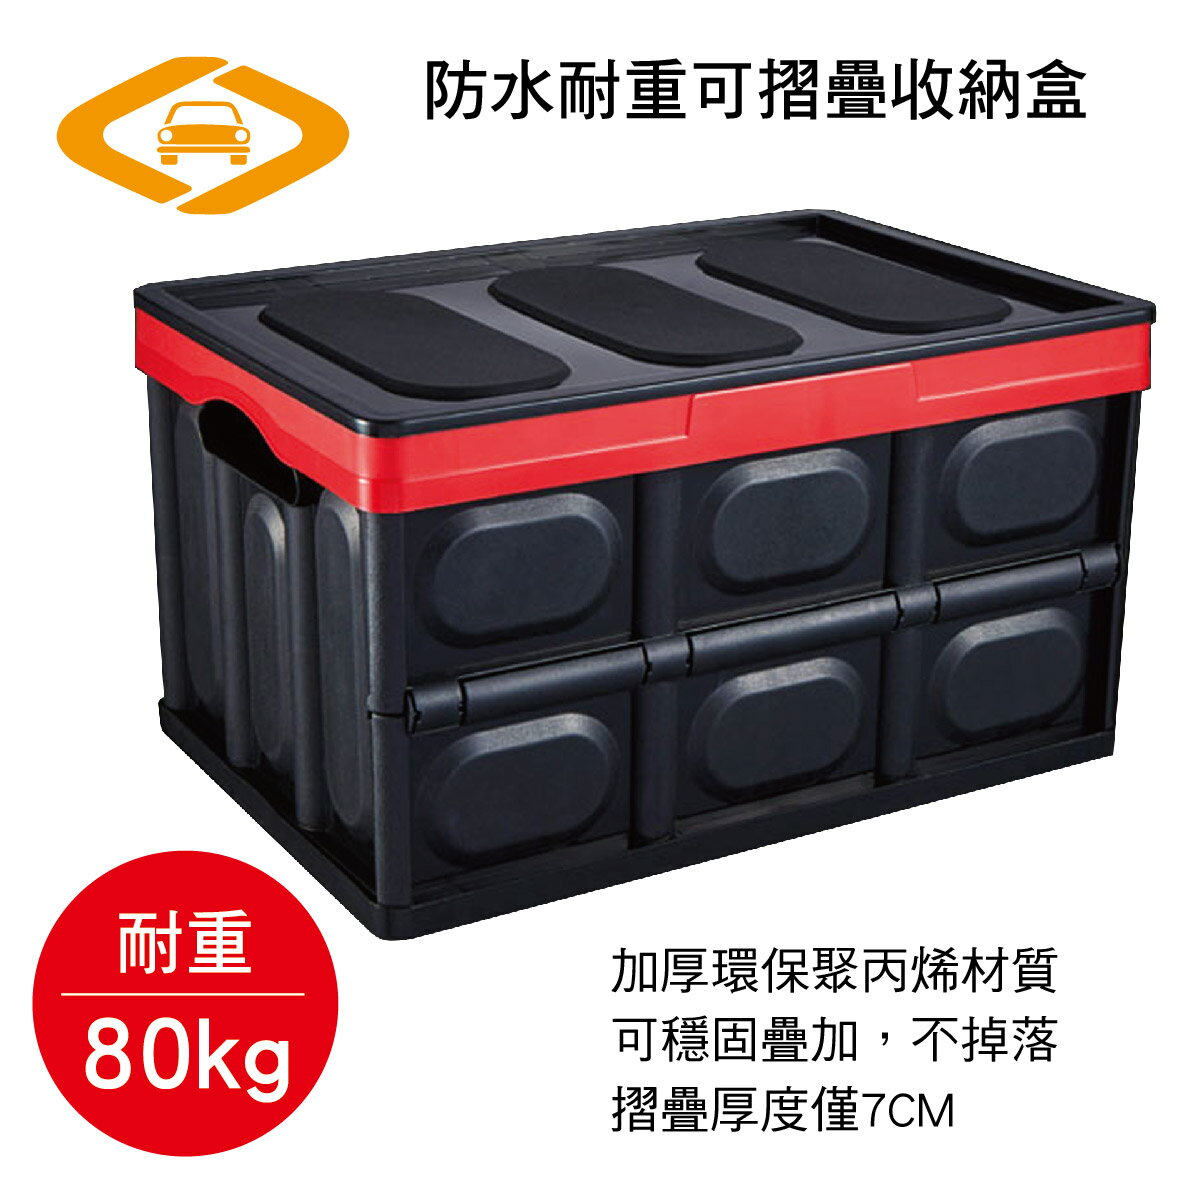 【點數10%回饋】真便宜 劦大 HD-241 防水耐重可摺疊收納盒